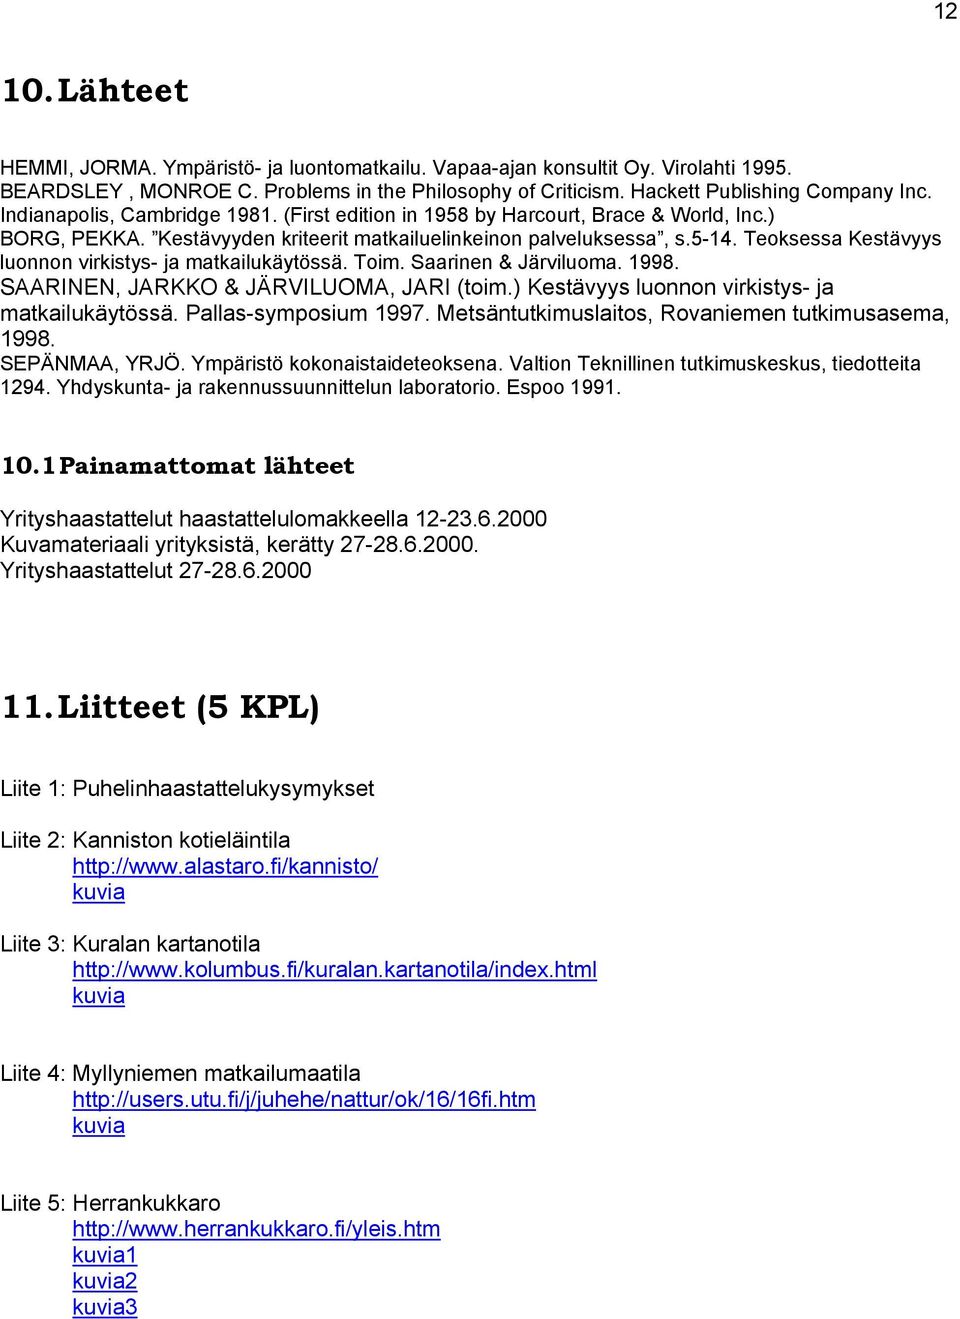 Teoksessa Kestävyys luonnon virkistys- ja matkailukäytössä. Toim. Saarinen & Järviluoma. 1998. SAARINEN, JARKKO & JÄRVILUOMA, JARI (toim.) Kestävyys luonnon virkistys- ja matkailukäytössä.